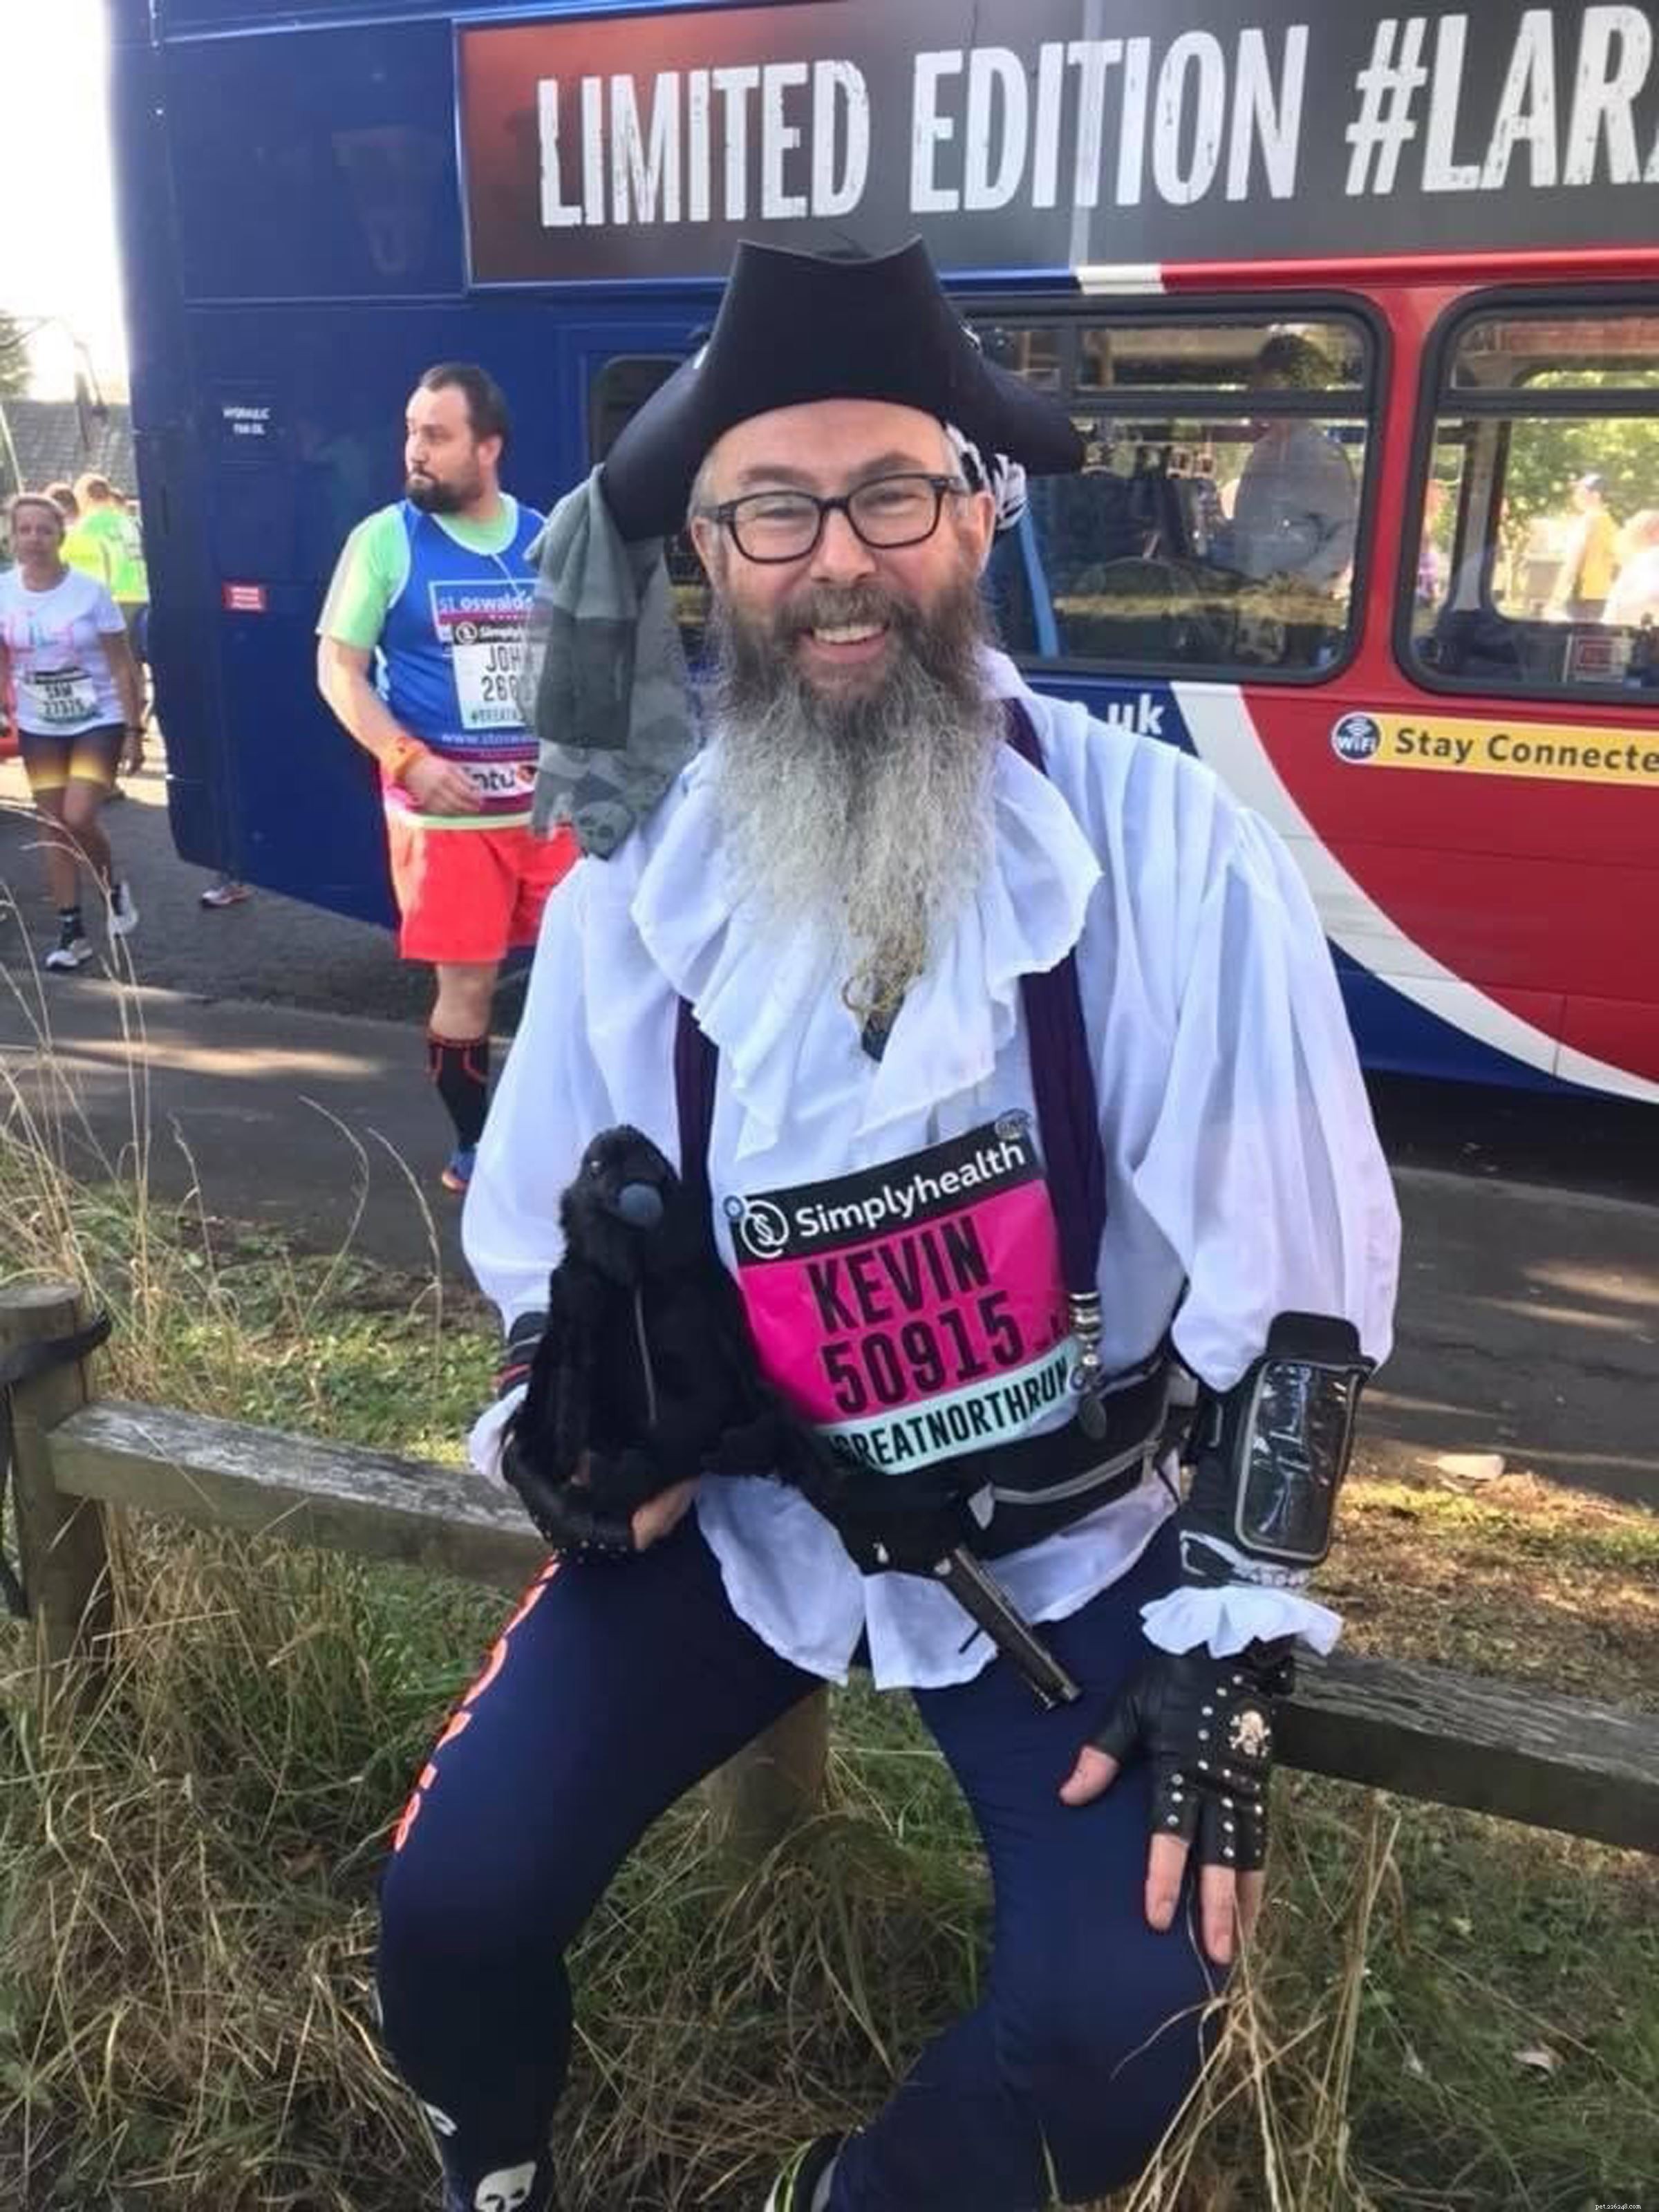 Kevin le pirate remercie son entraînement pour le marathon de Londres de lui avoir sauvé la vie, et maintenant il recommence pour collecter des fonds pour les chats 